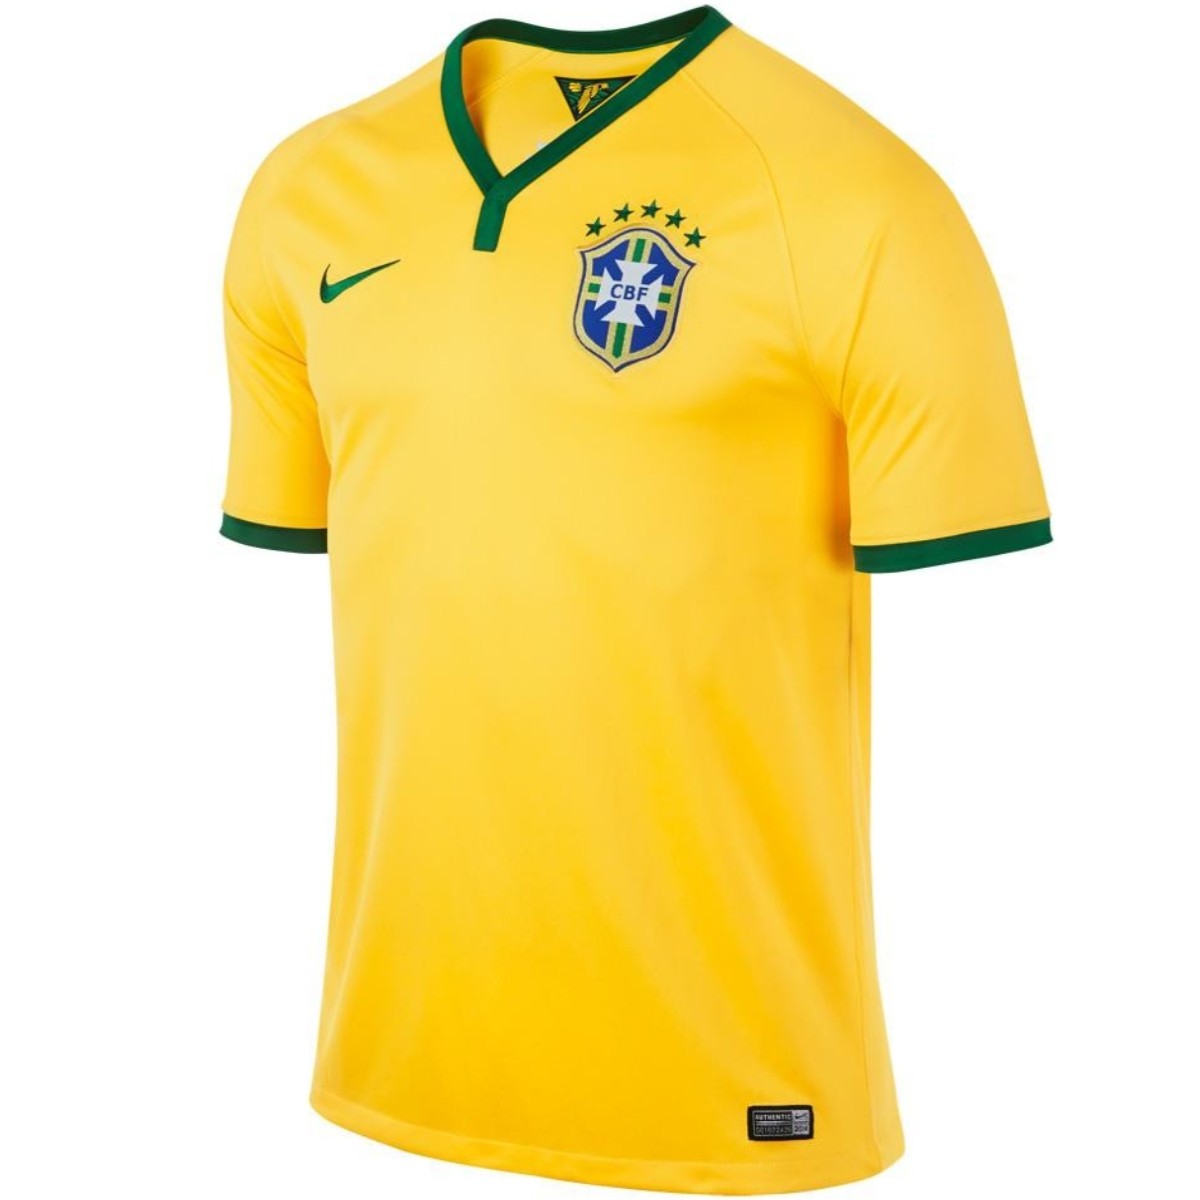 BRAZIL 2013 2014 TRAINING SHIRT BRASIL FOOTBALL SOCCER NIKE 575697